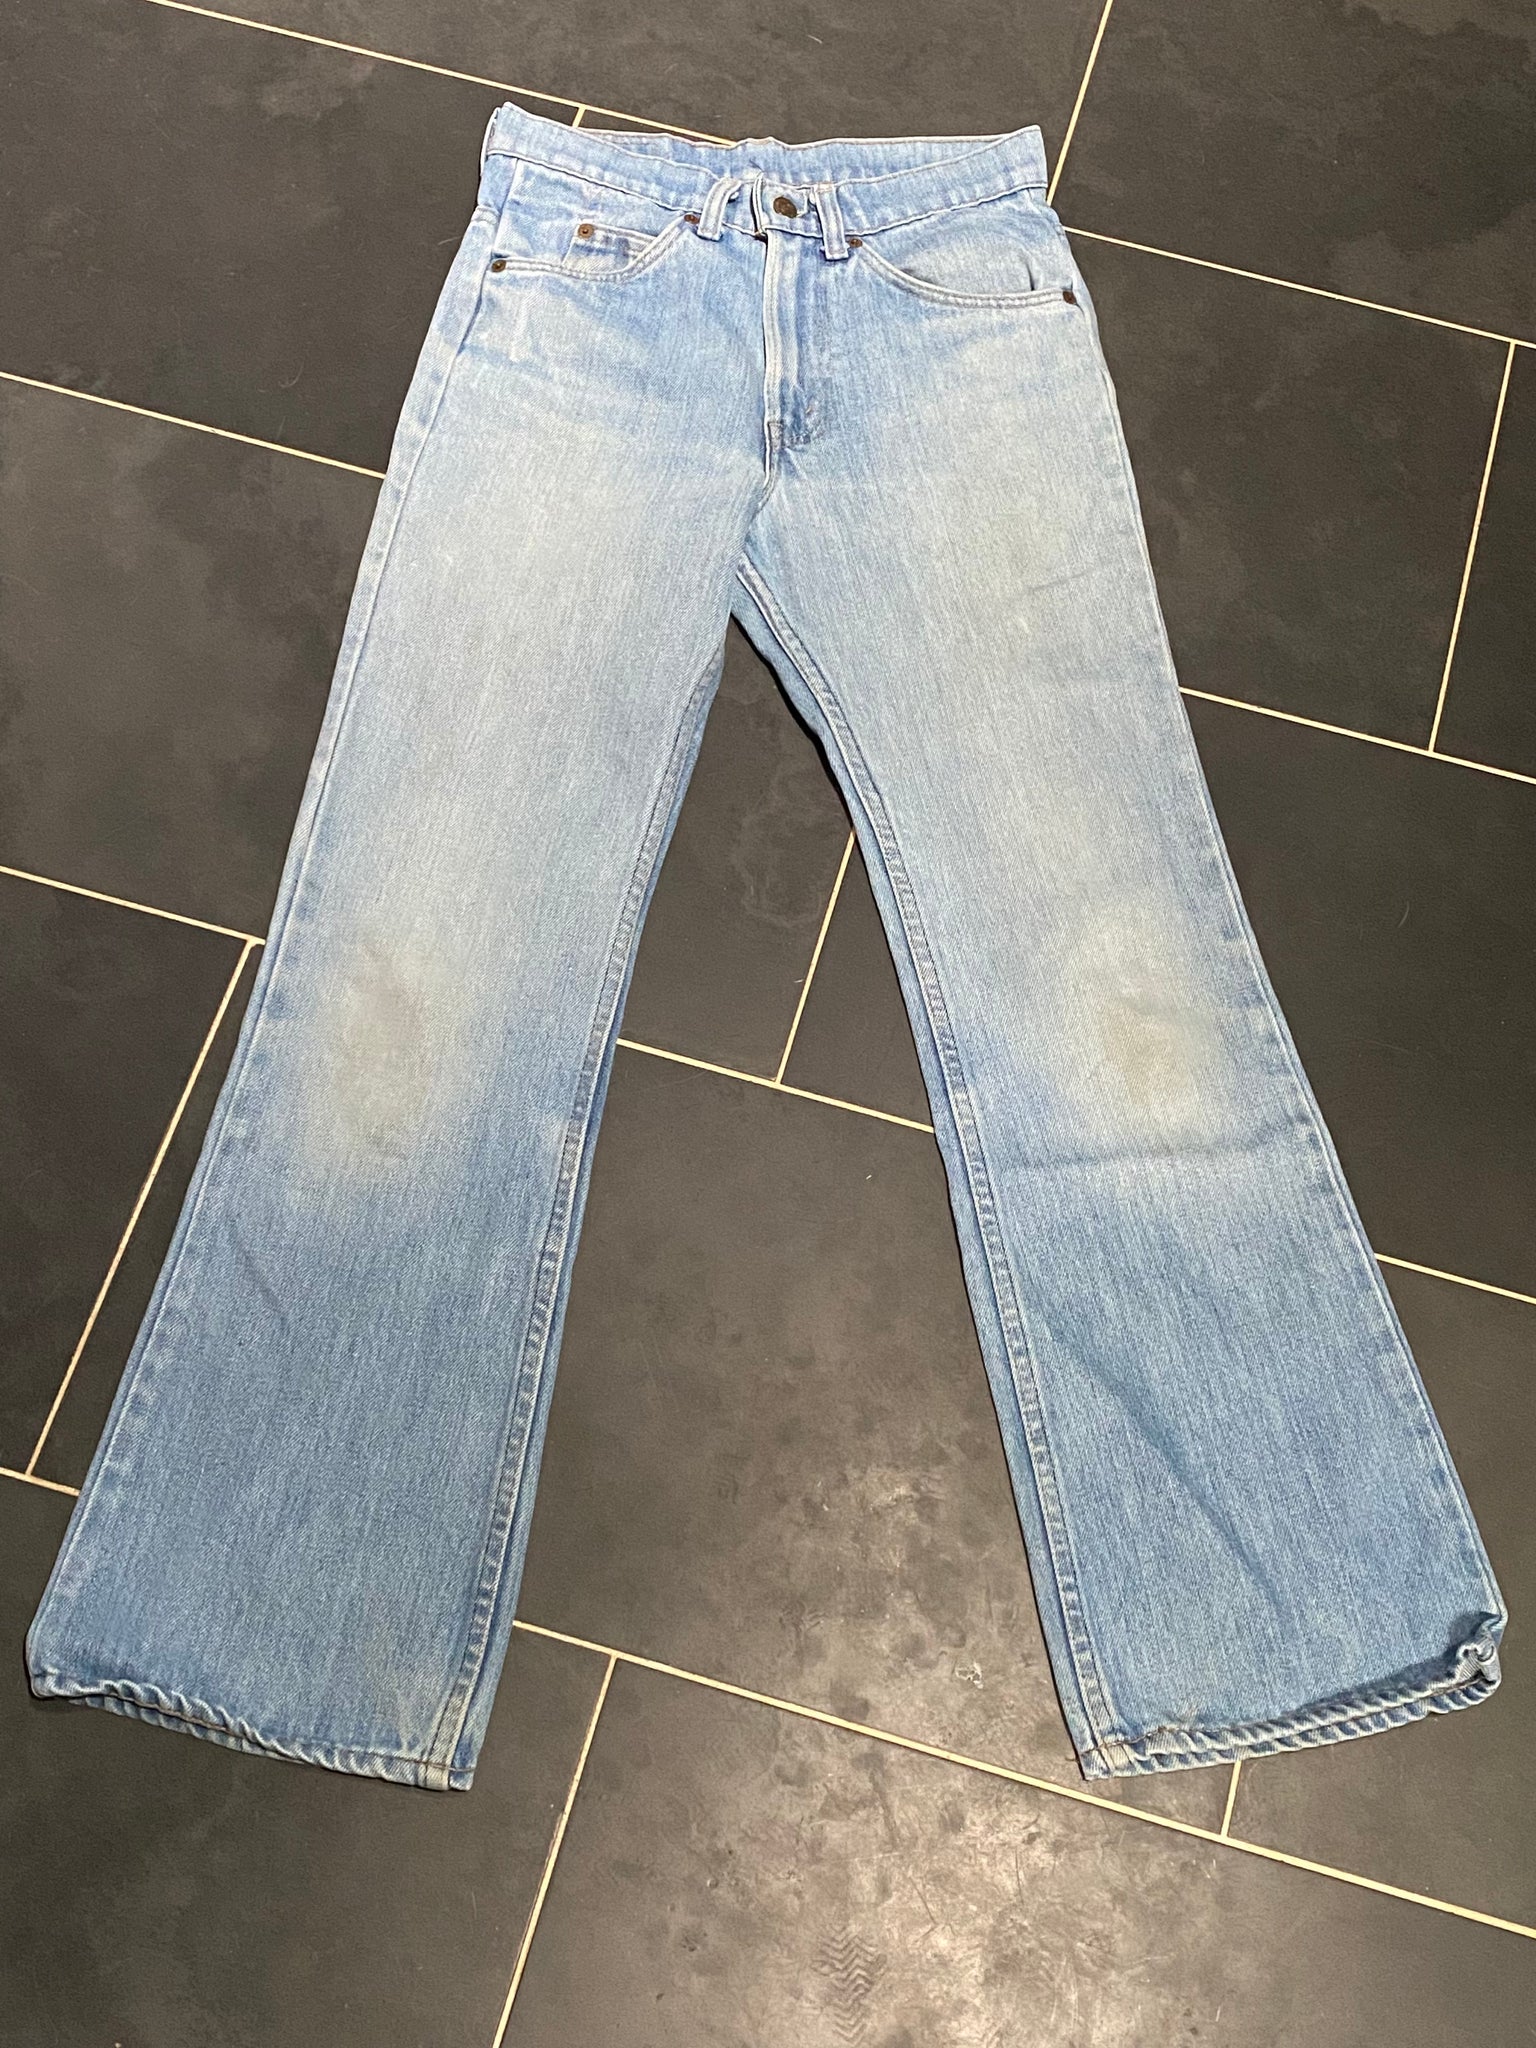 faded denim twill LEVI'S jeans 517 flare leg vintage 1970s boot cut jean 29 x 30